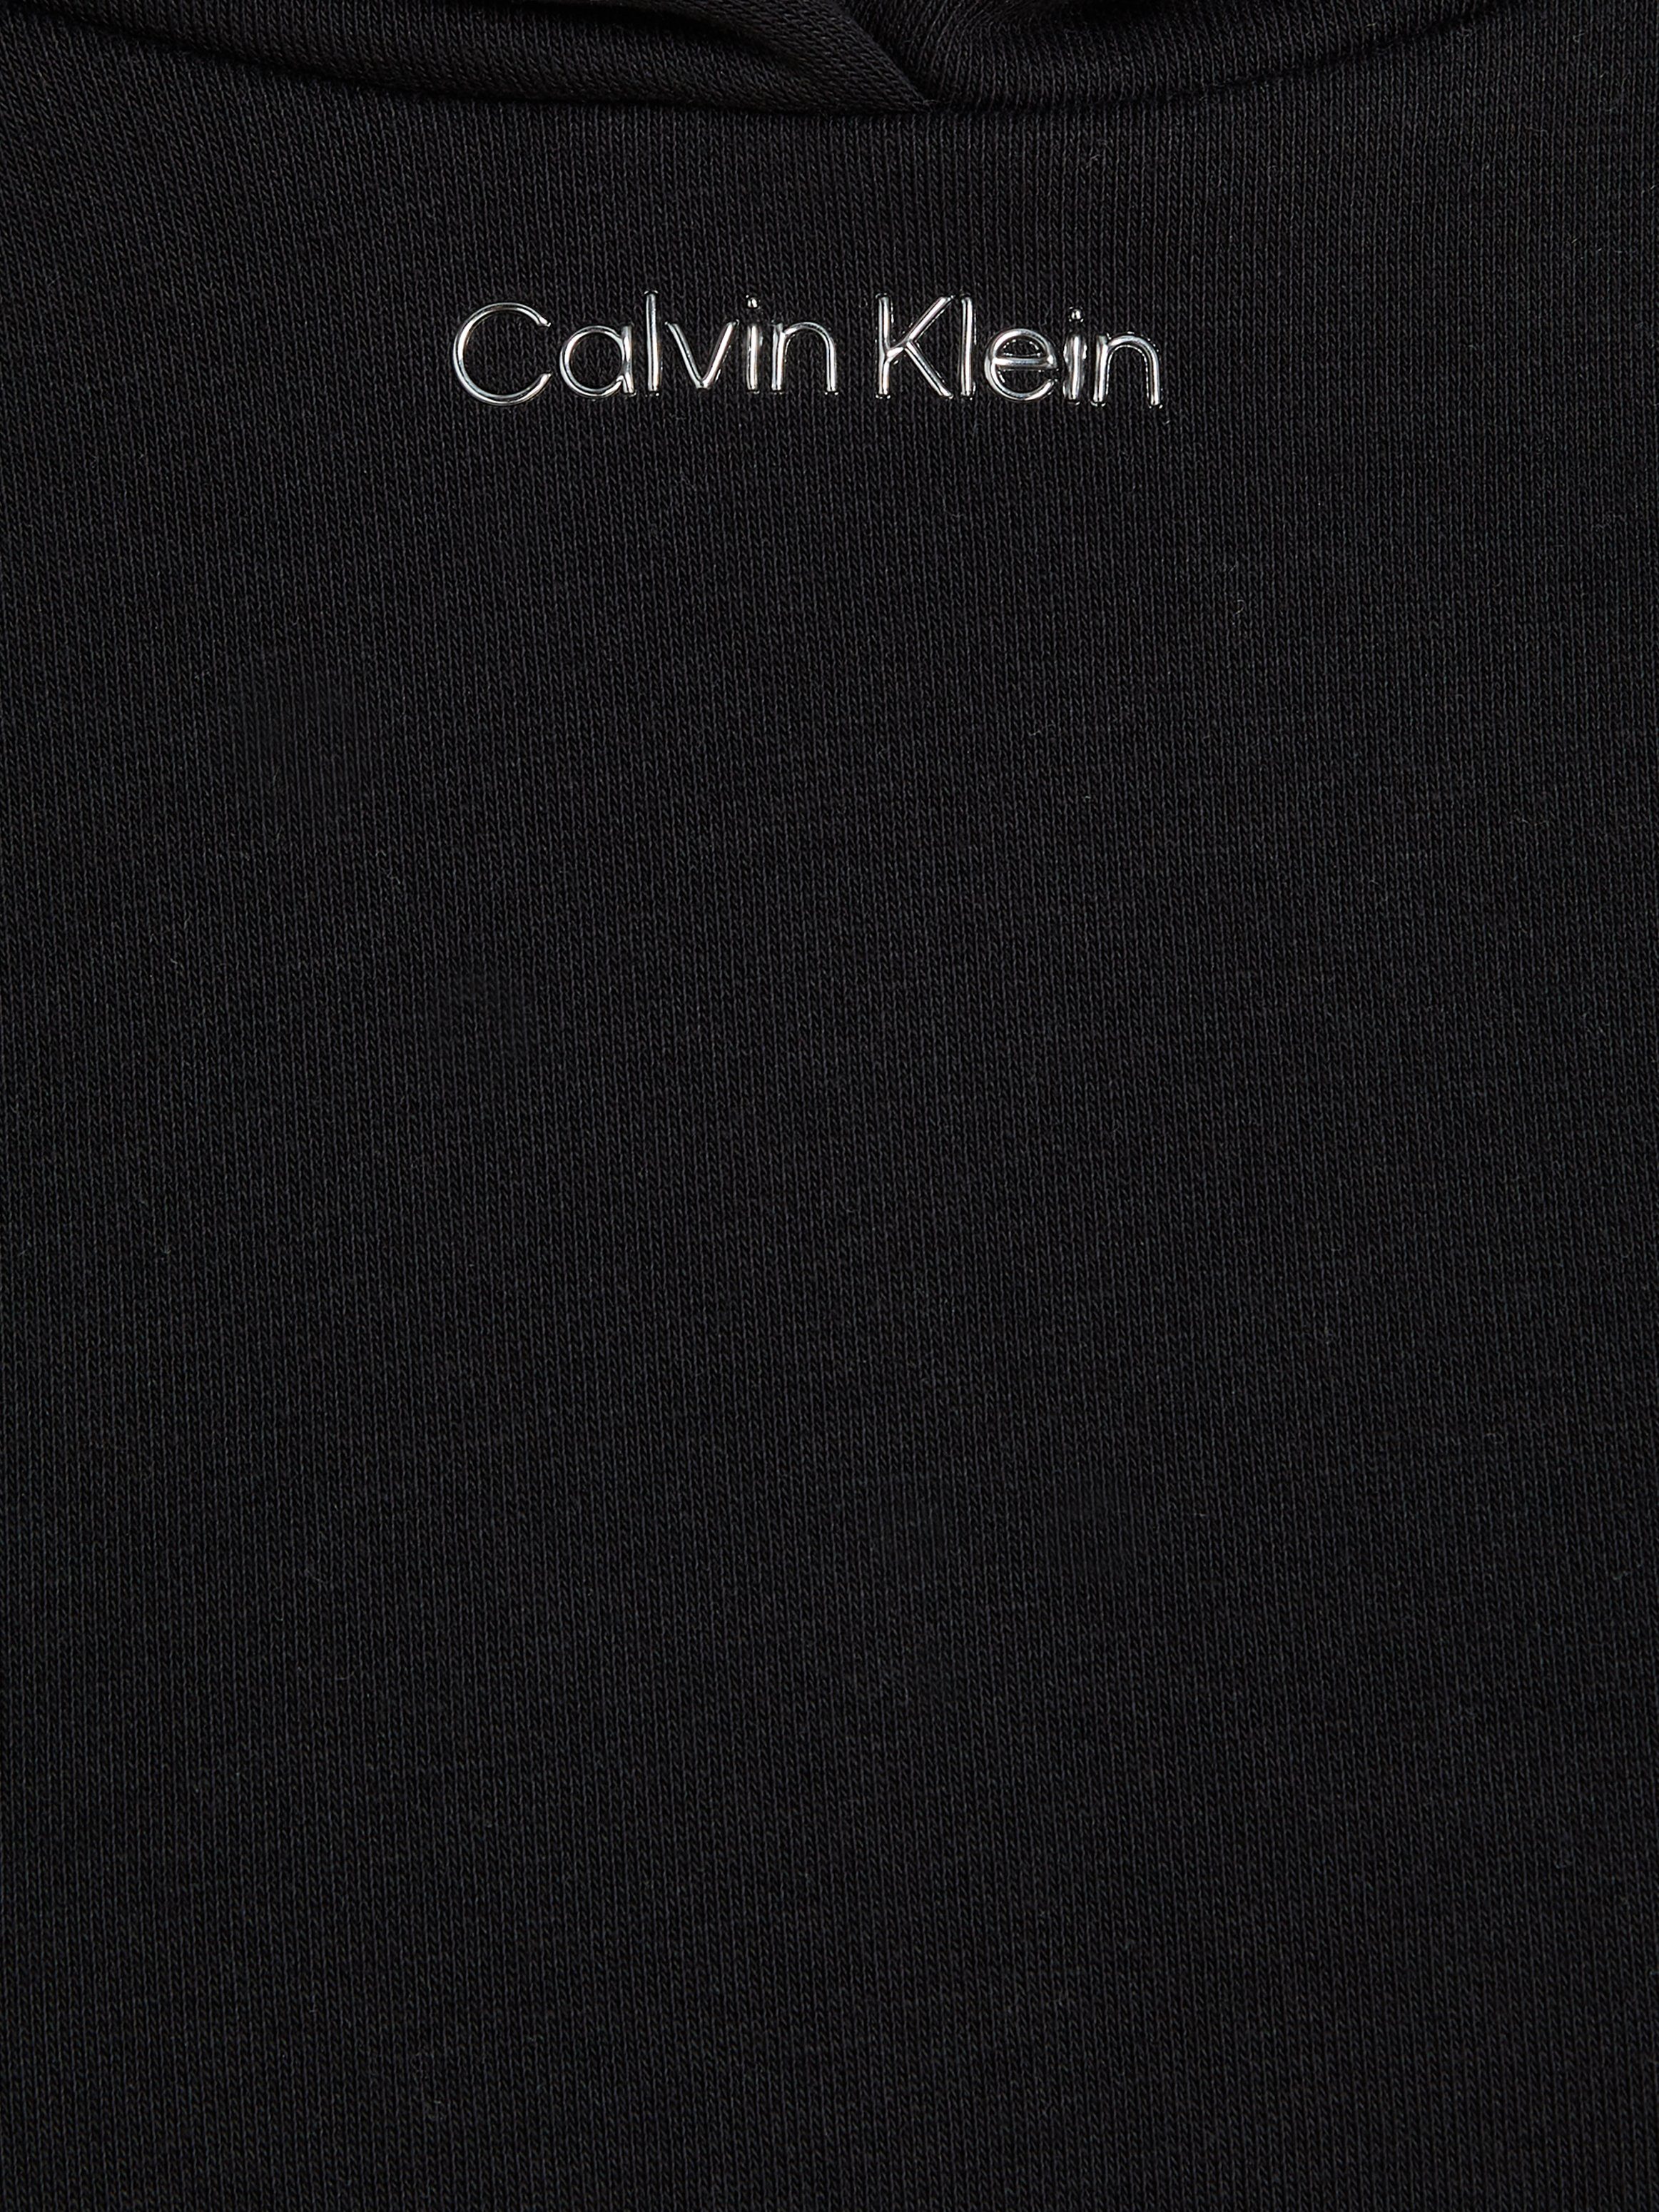 MICRO LOGO METALLIC Calvin Klein Black Ck HOODIE Kapuzensweatshirt